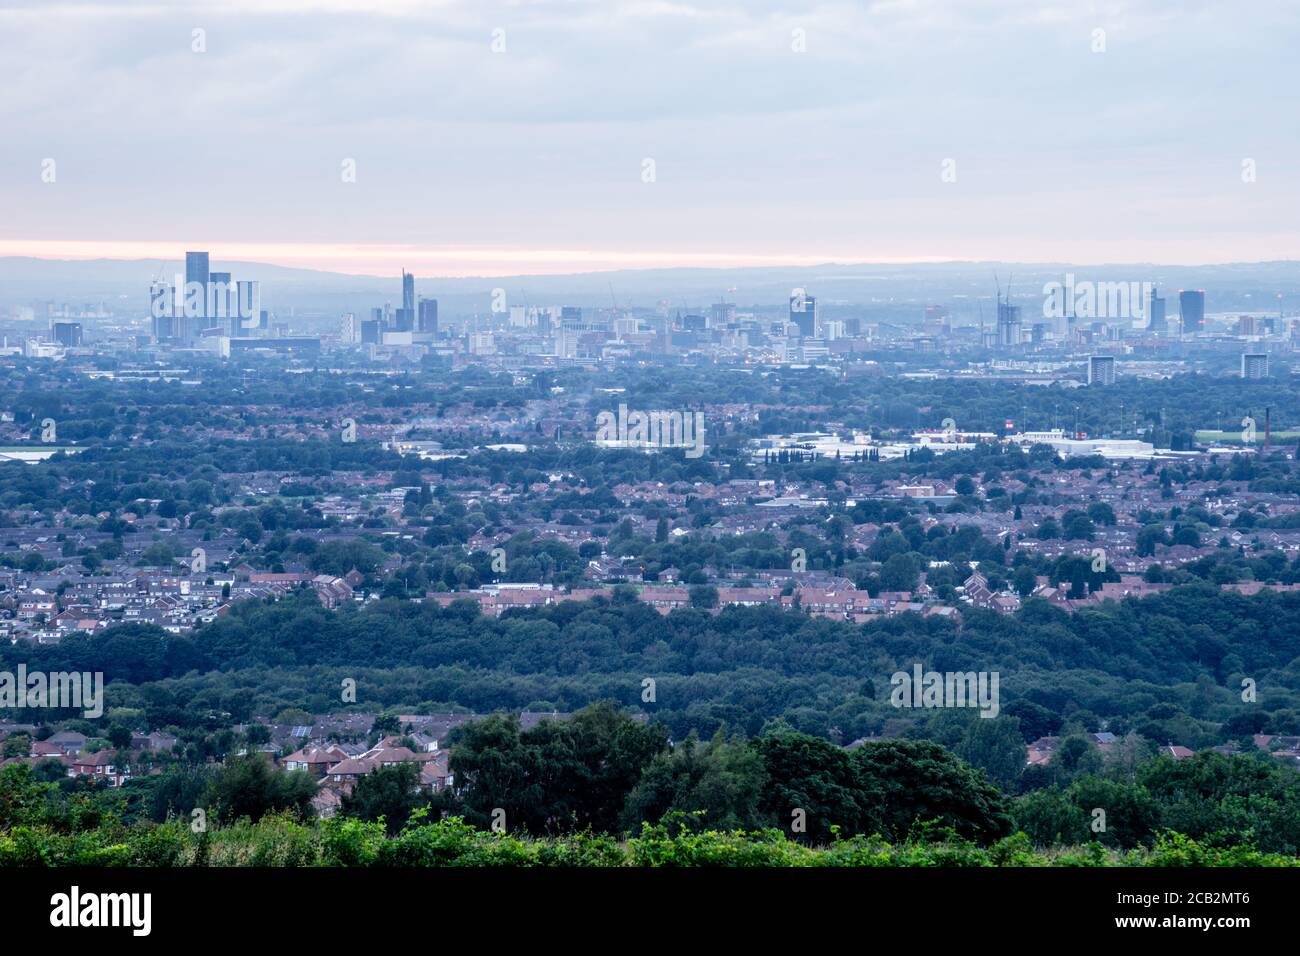 Skyline di Manchester visto da est, agosto 2020. Manny, Manc, 0161, cottonopolis, madchester, città di magazzino, la città piovosa. Inghilterra Regno Unito. Foto Stock